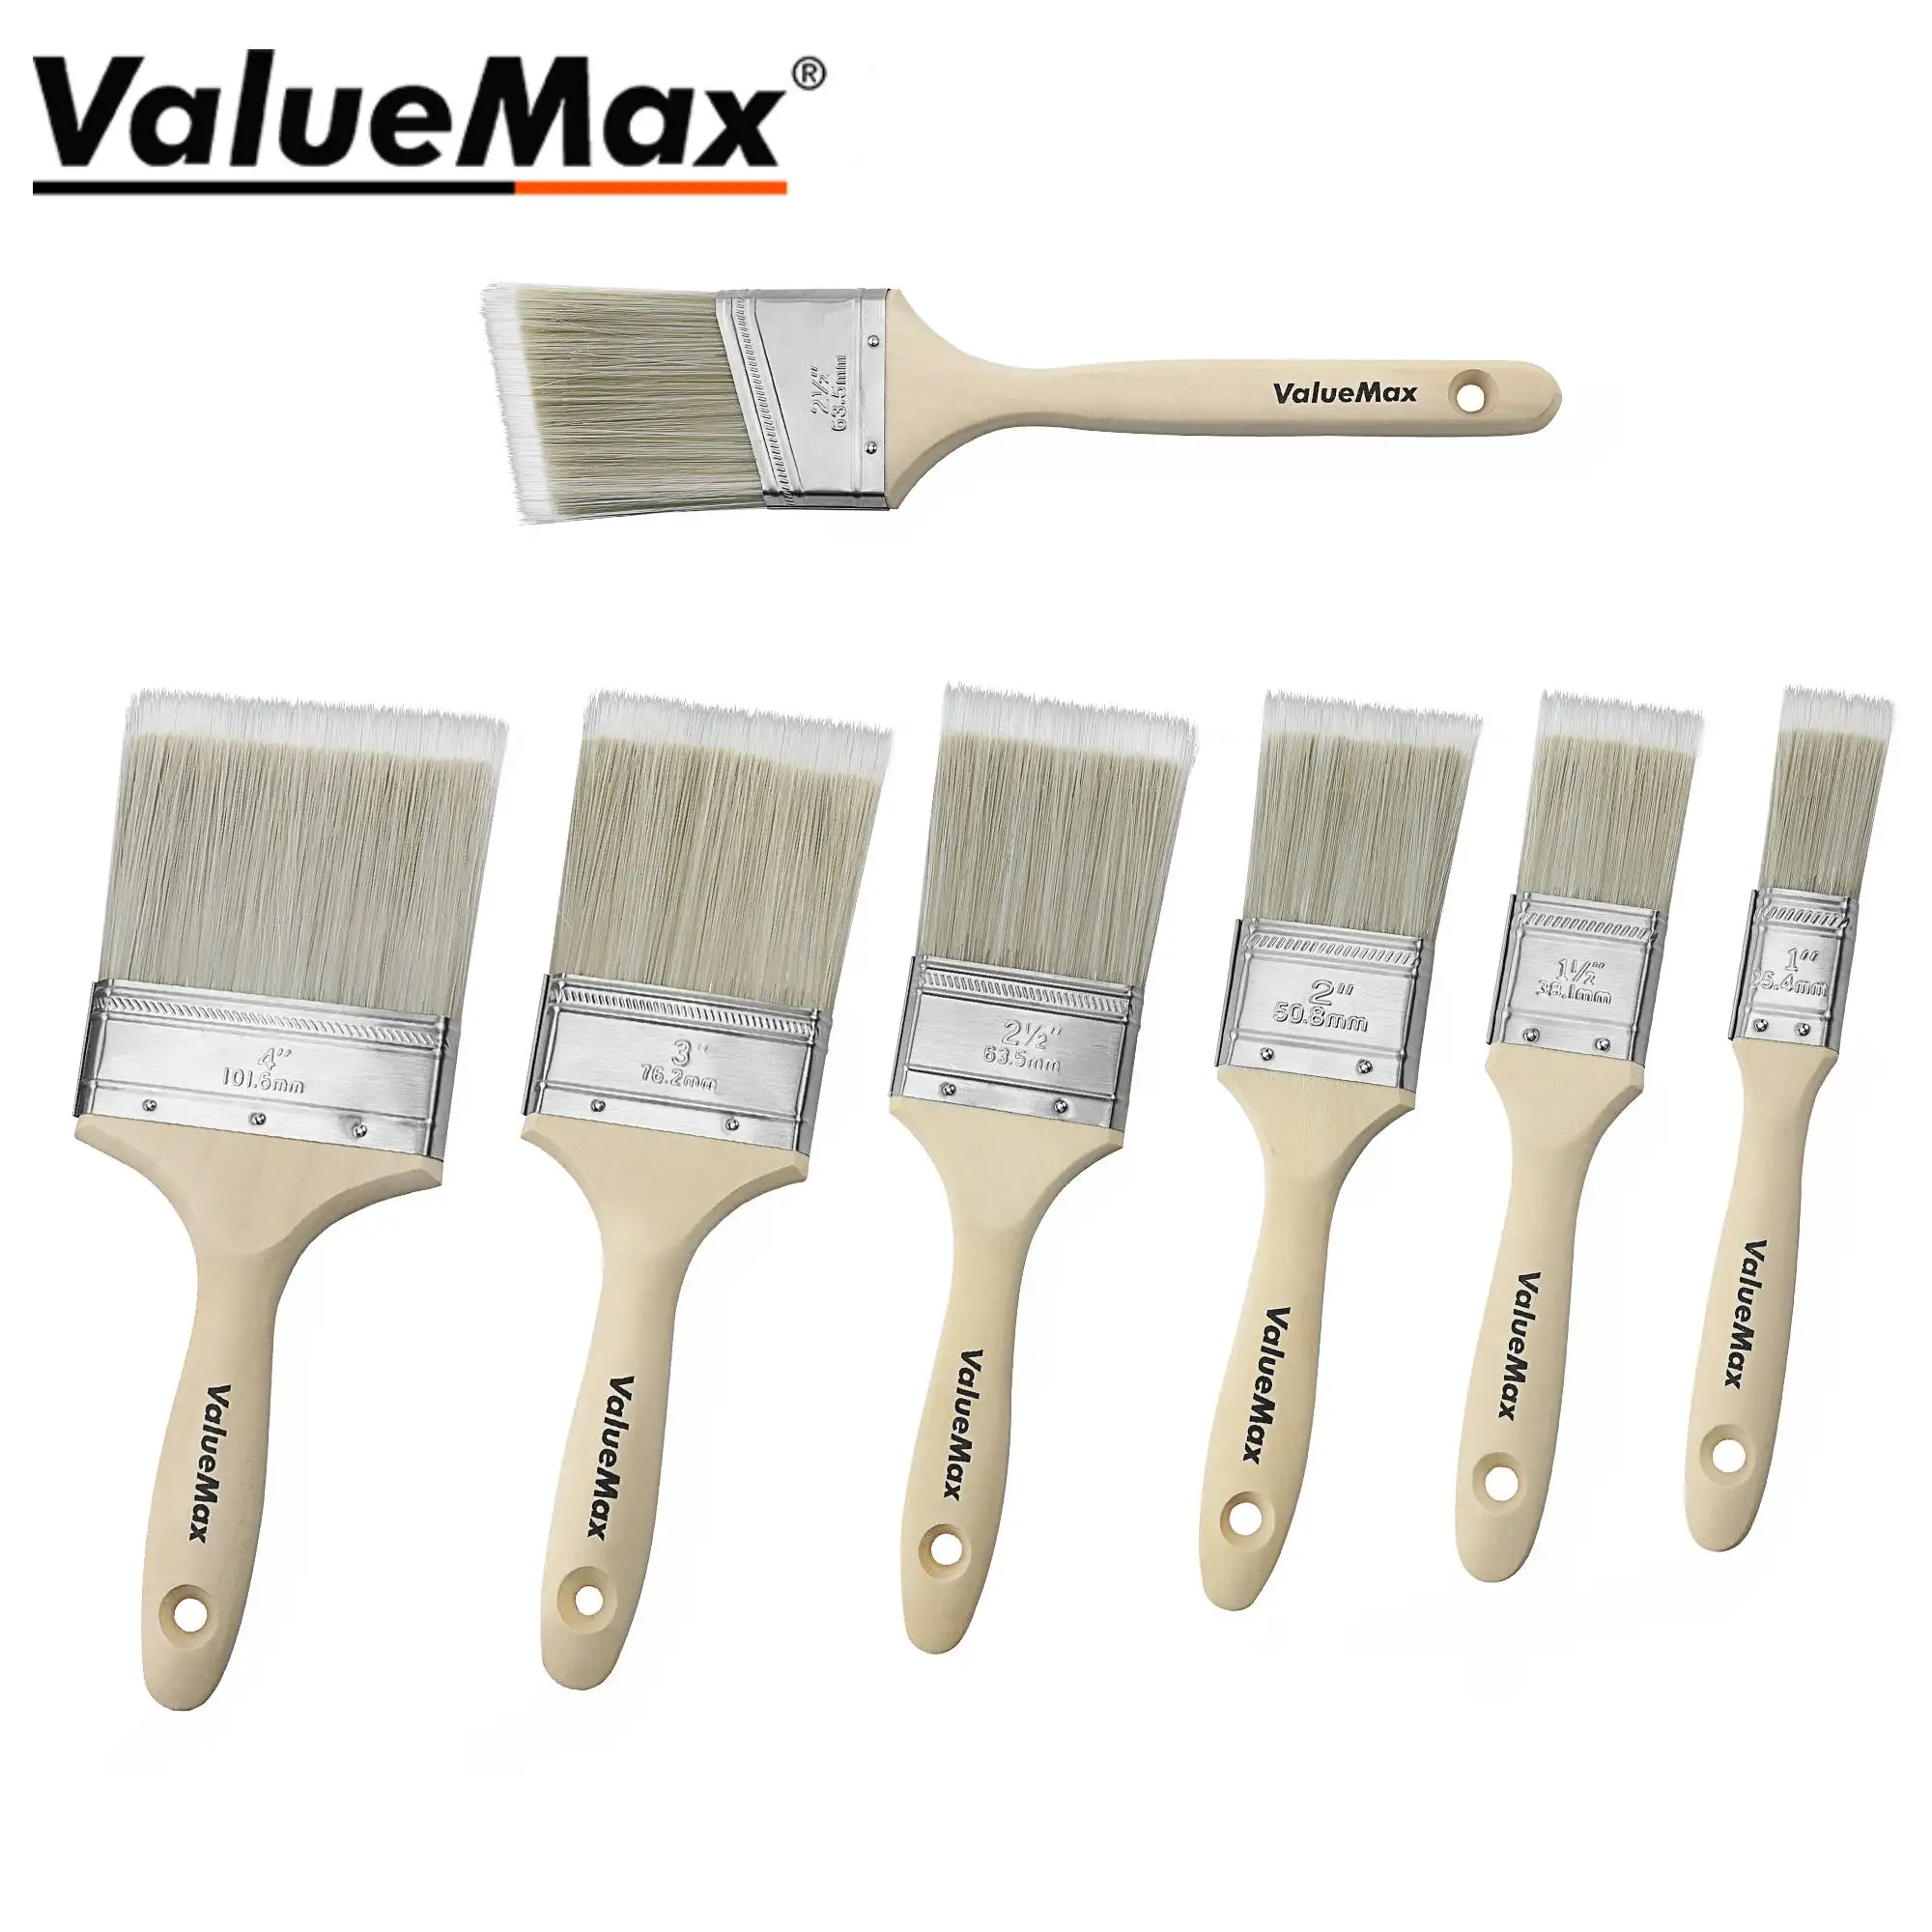 Valuemax 7pcs Paint Brush Set Wooden Handle Paint Brush for Wall And Furniture Paint Paint Brushes Wall Edges Trim Paint Brush